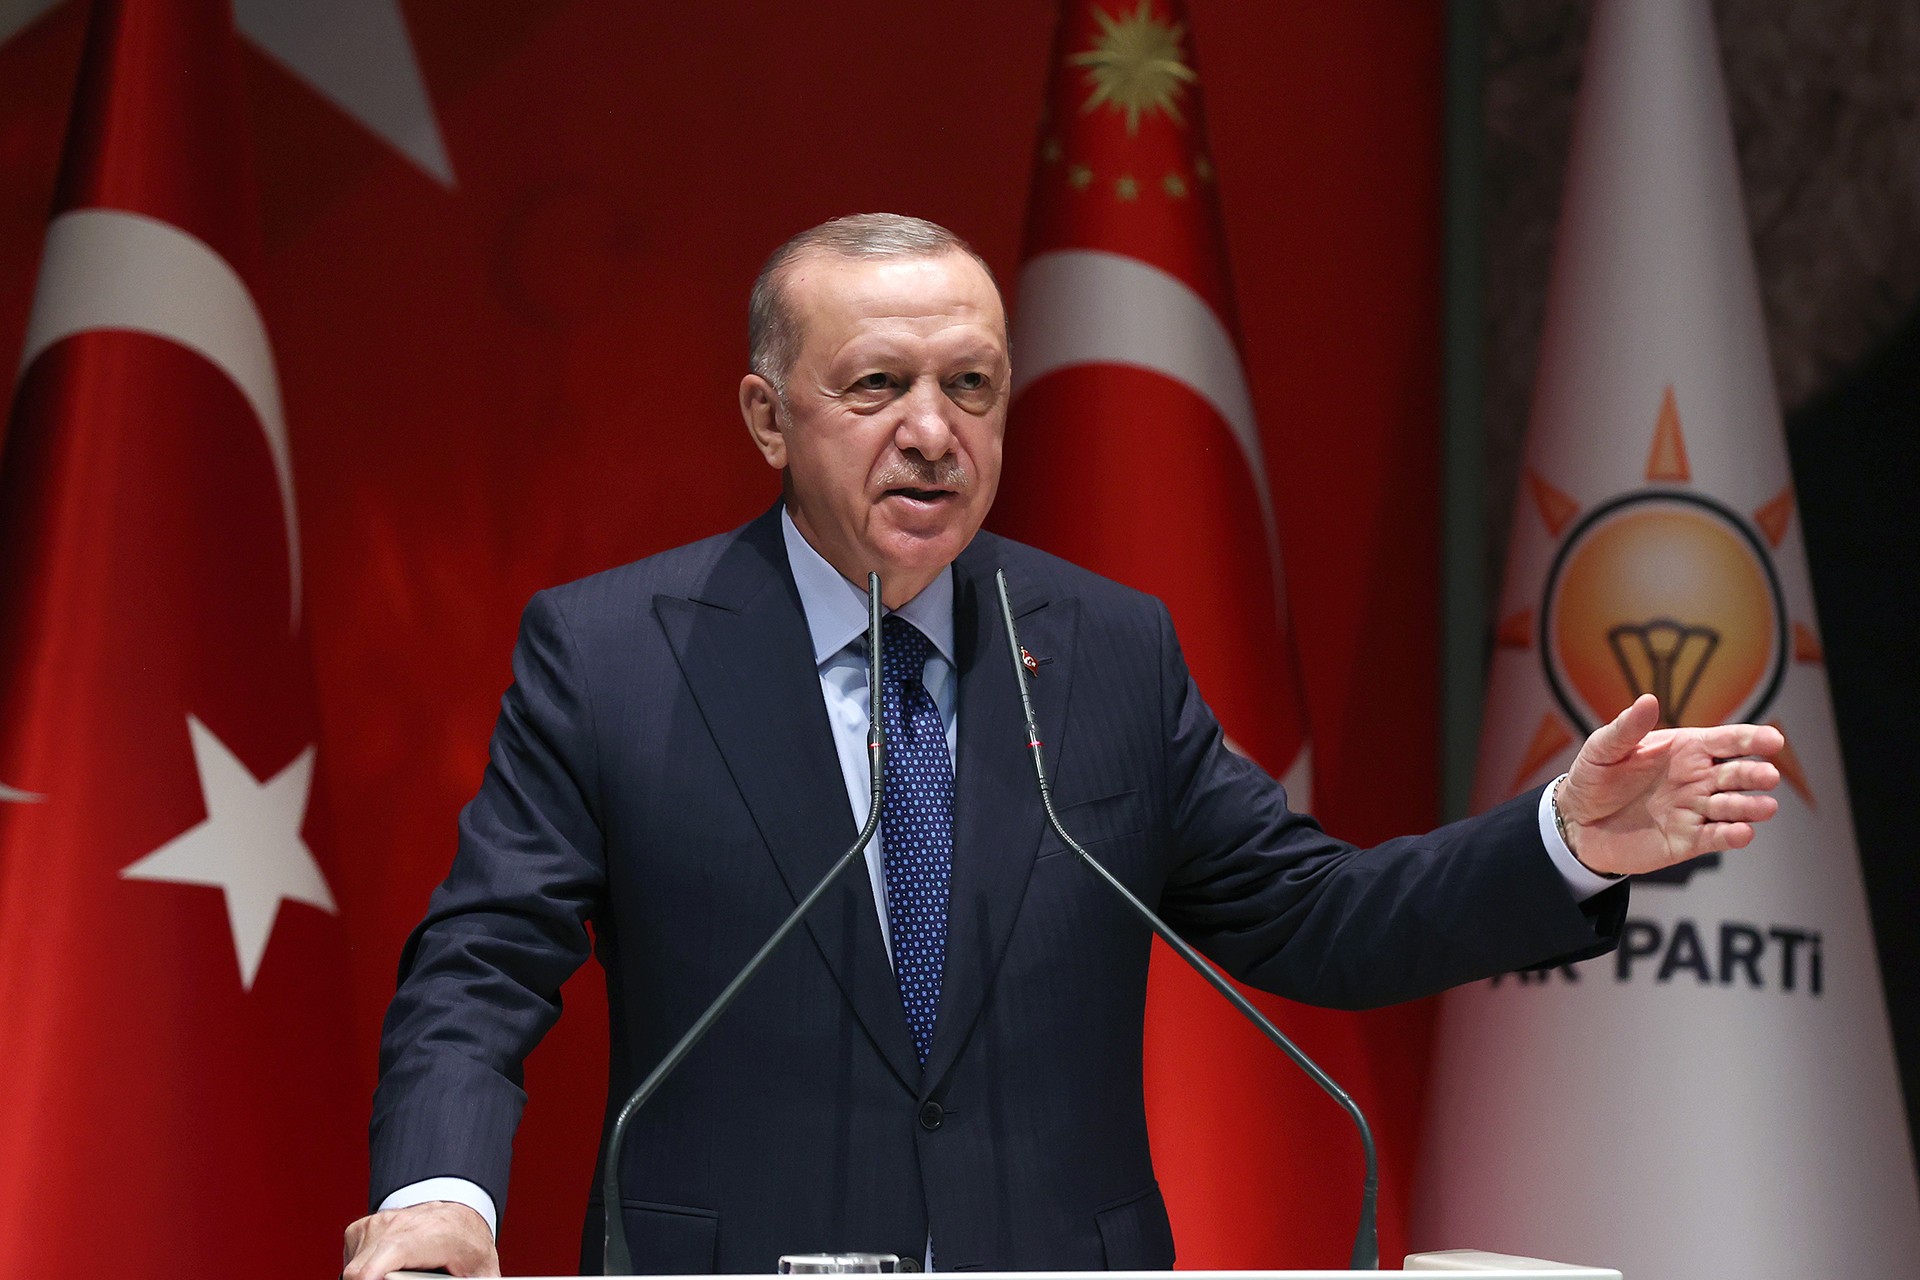 Son Dakika | Cumhurbaşkanı Recep Tayyip Erdoğan'dan koronavirüs açıklaması!